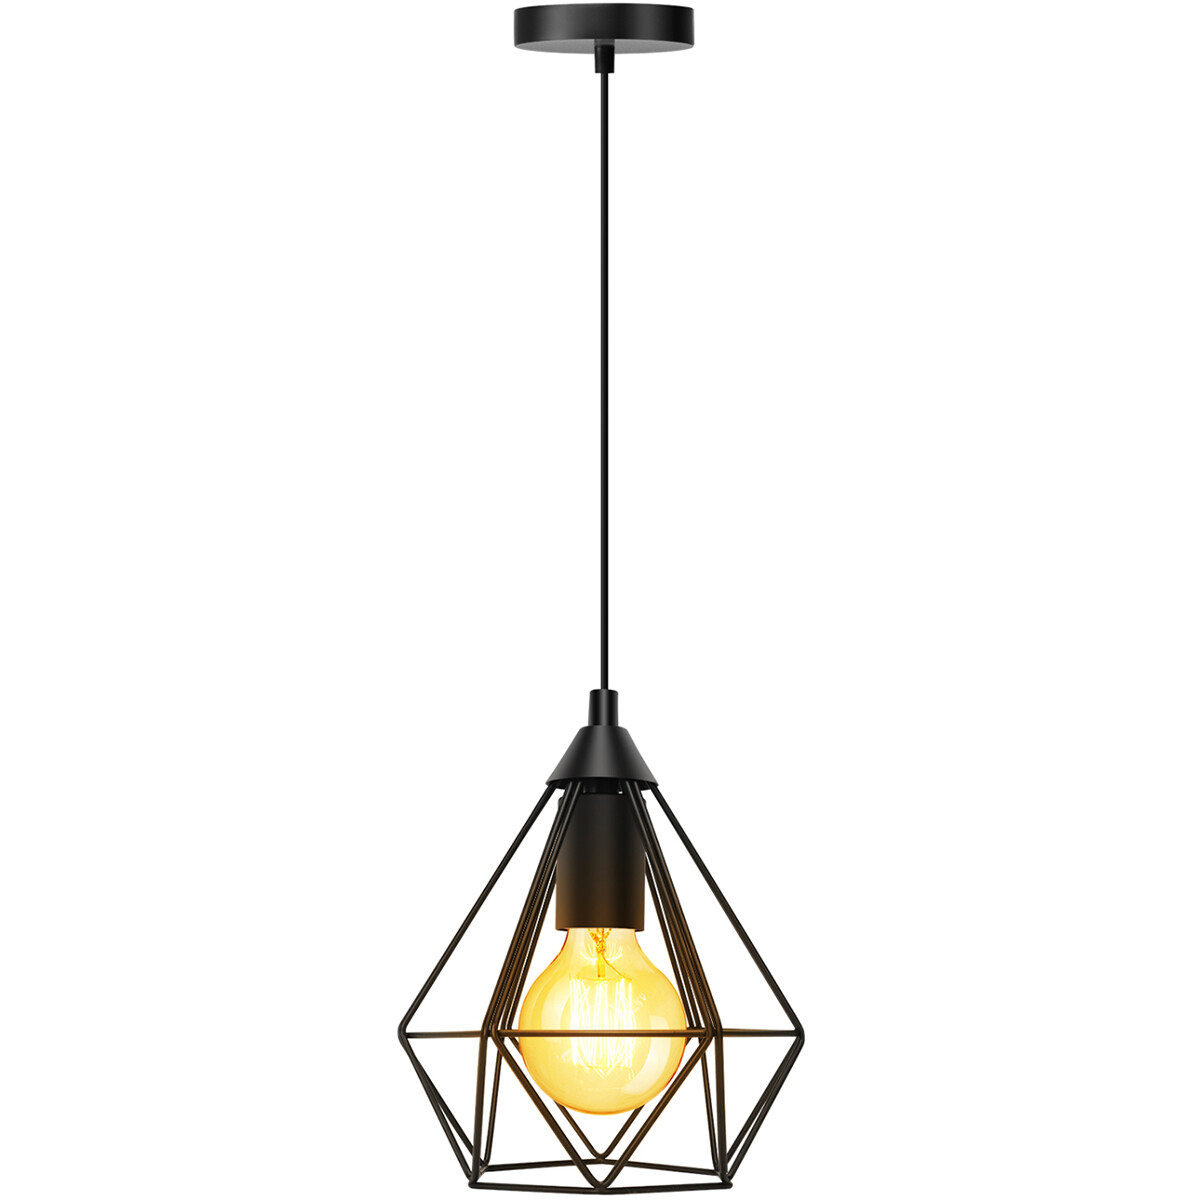 LED Hanglamp - Hangverlichting - Aigi Elsa - E27 Fitting - 1-lichts - Retro - Klassiek - Mat Zwart -